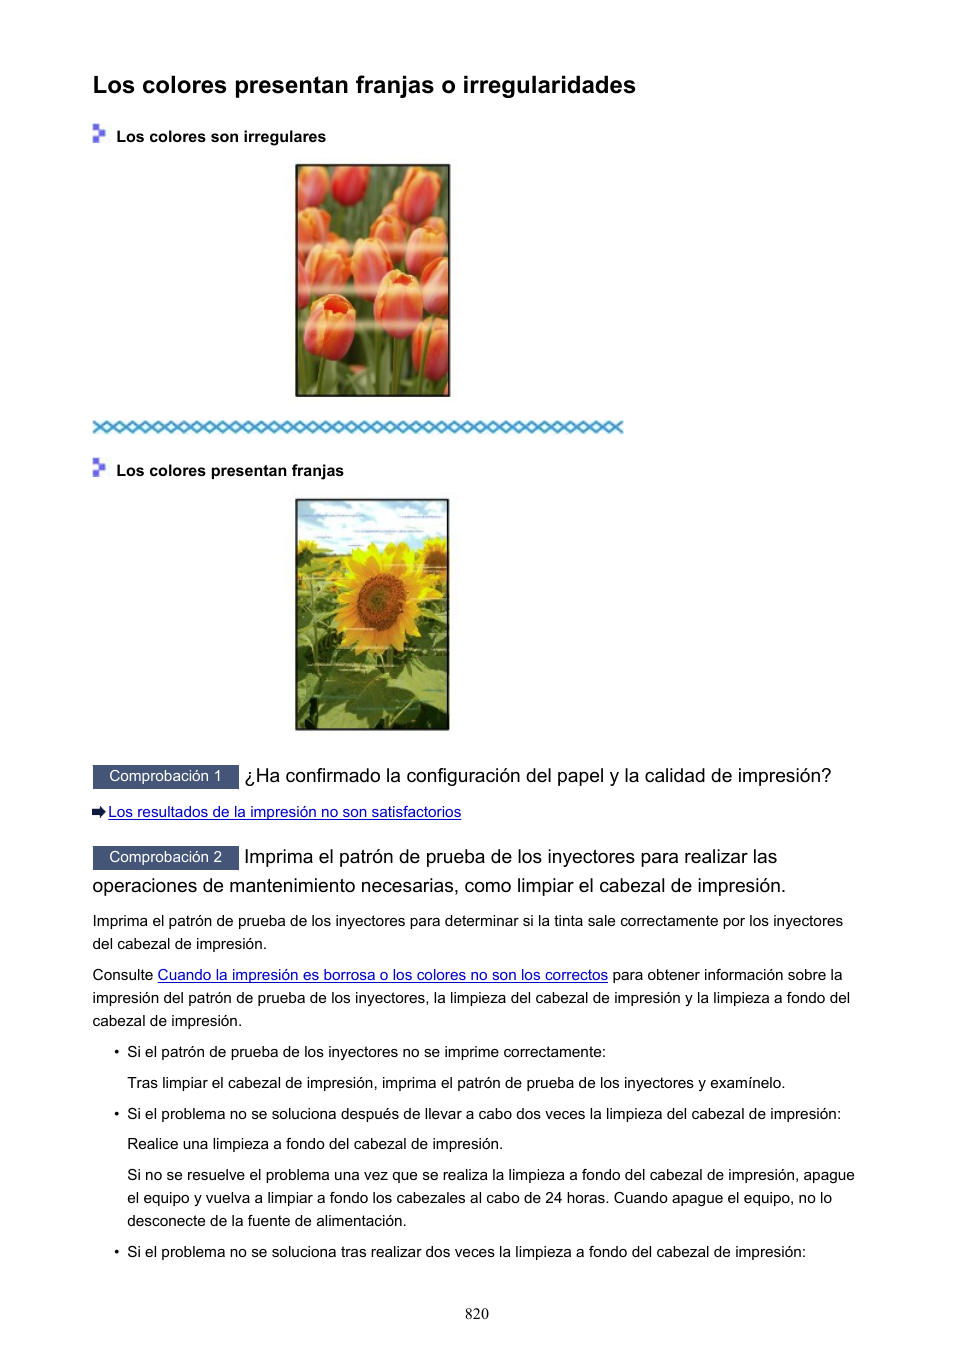 Los colores presentan franjas o irregularidades | Canon PIXMA MX475 Manual del usuario | Página 820 / 973